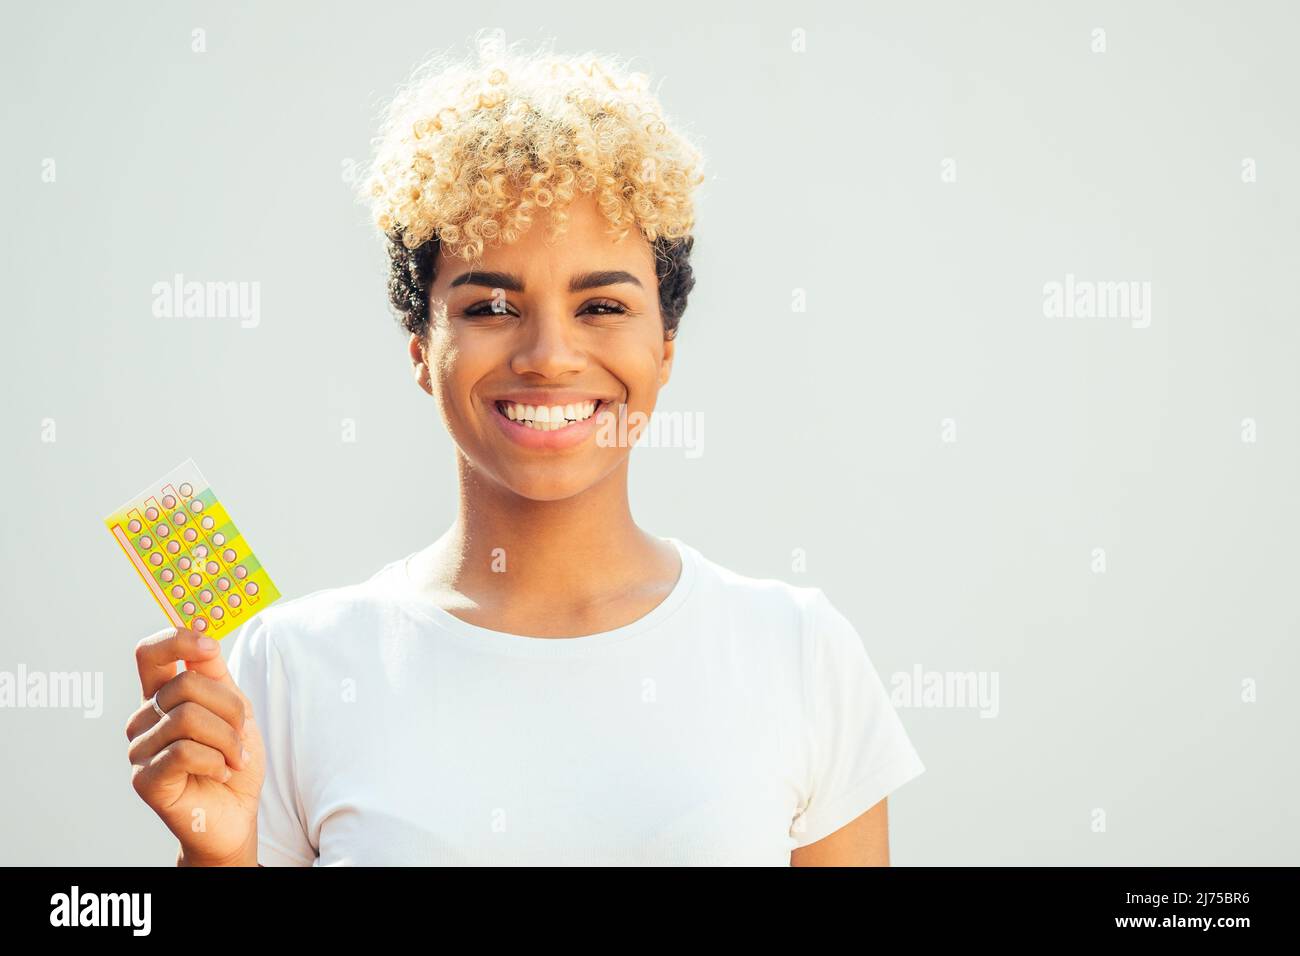 fille brésilienne avec des boucles blondes afro mignonnes montrant des pilules contraceptives dans le fond blanc du studio Banque D'Images